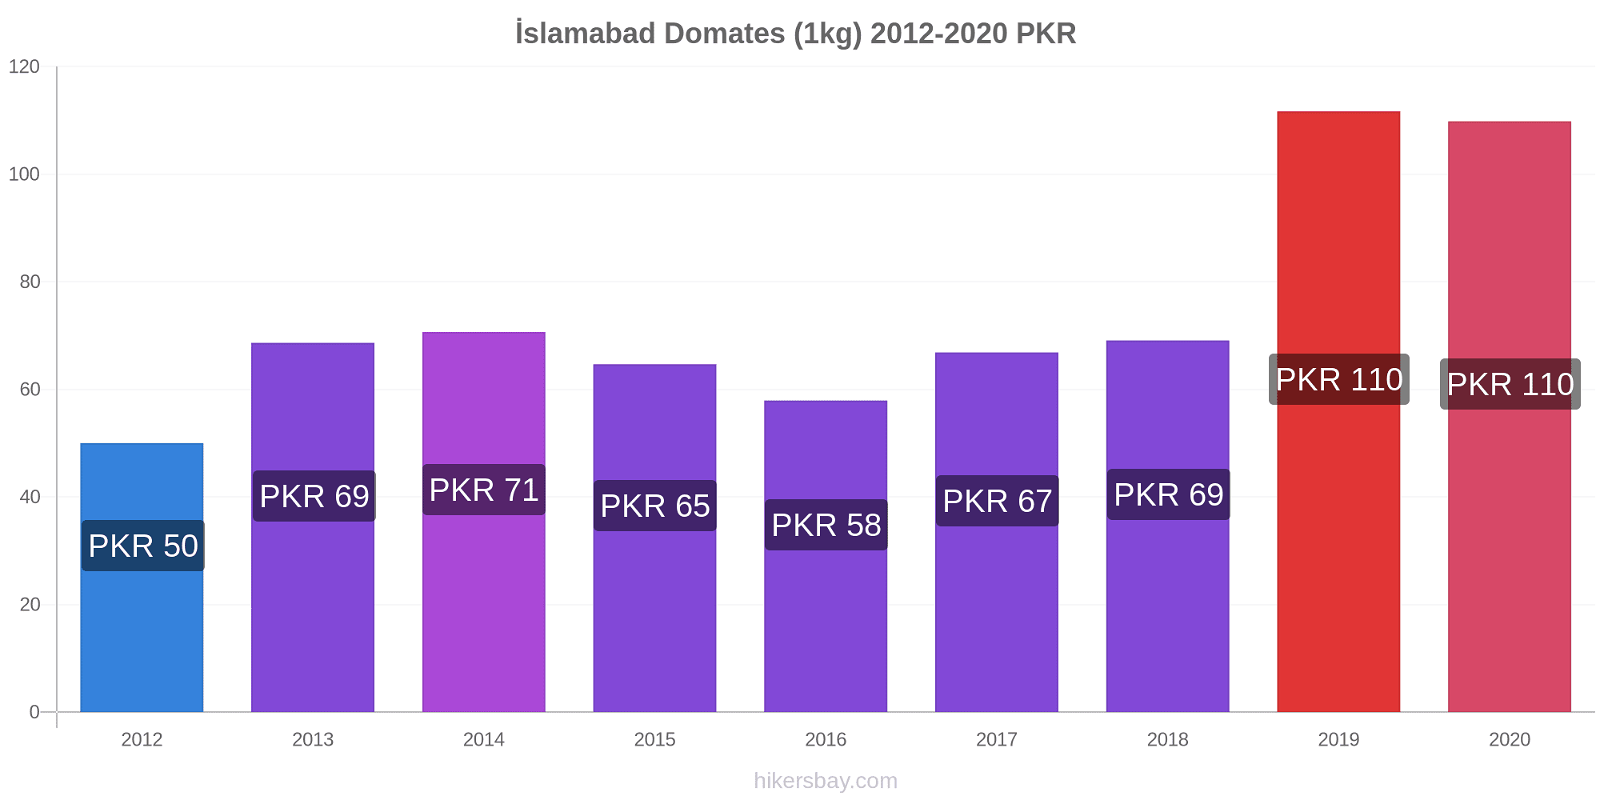 İslamabad fiyat değişiklikleri Domates (1kg) hikersbay.com